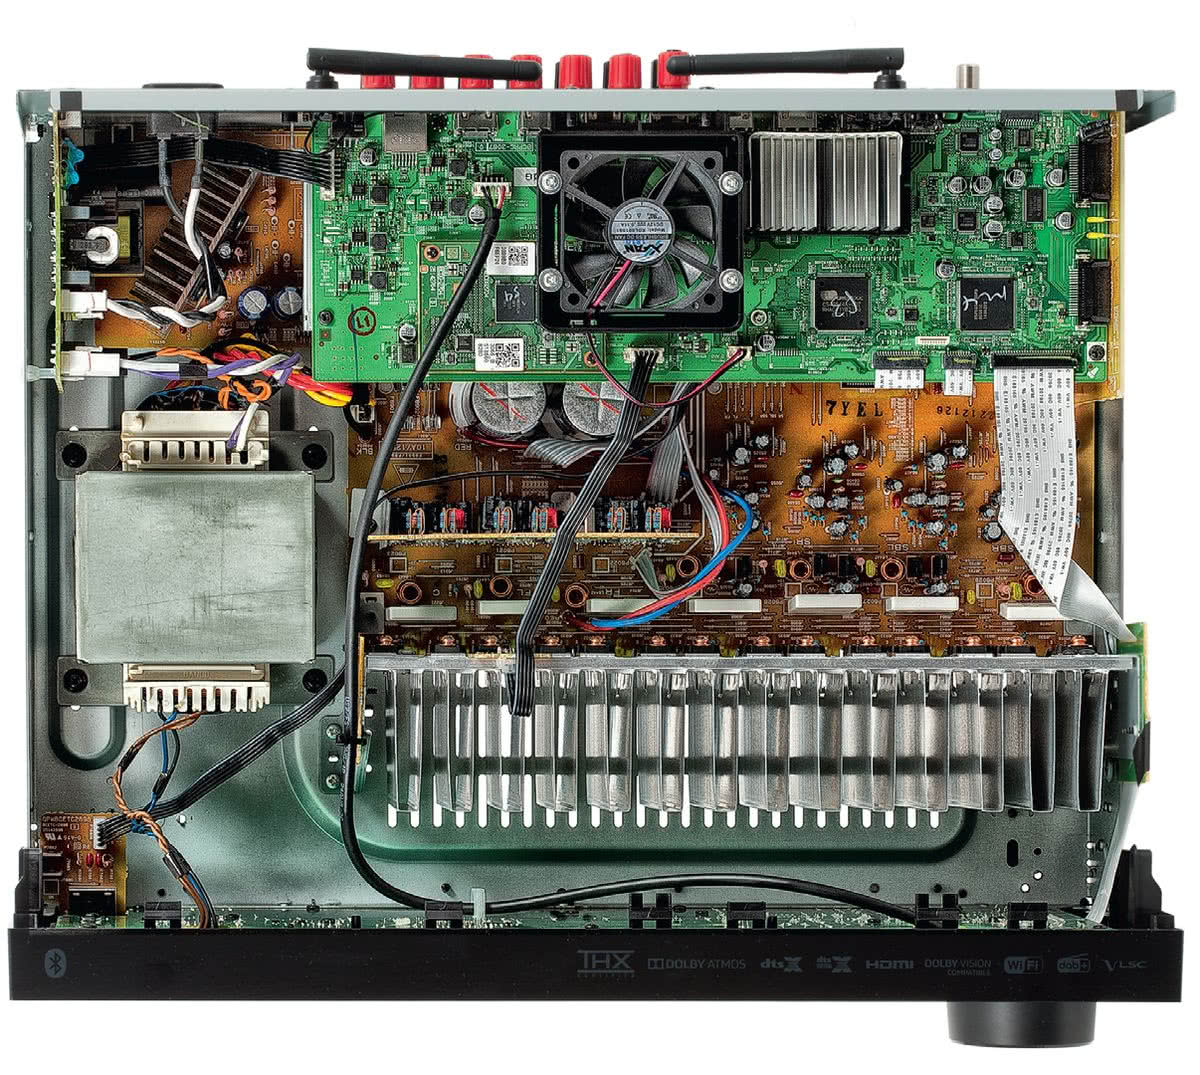 RC-911R-For-Onkyo-AV-Power-Amplifier-Remote-Control-TX-RZ810-TX-NR575E.jpg